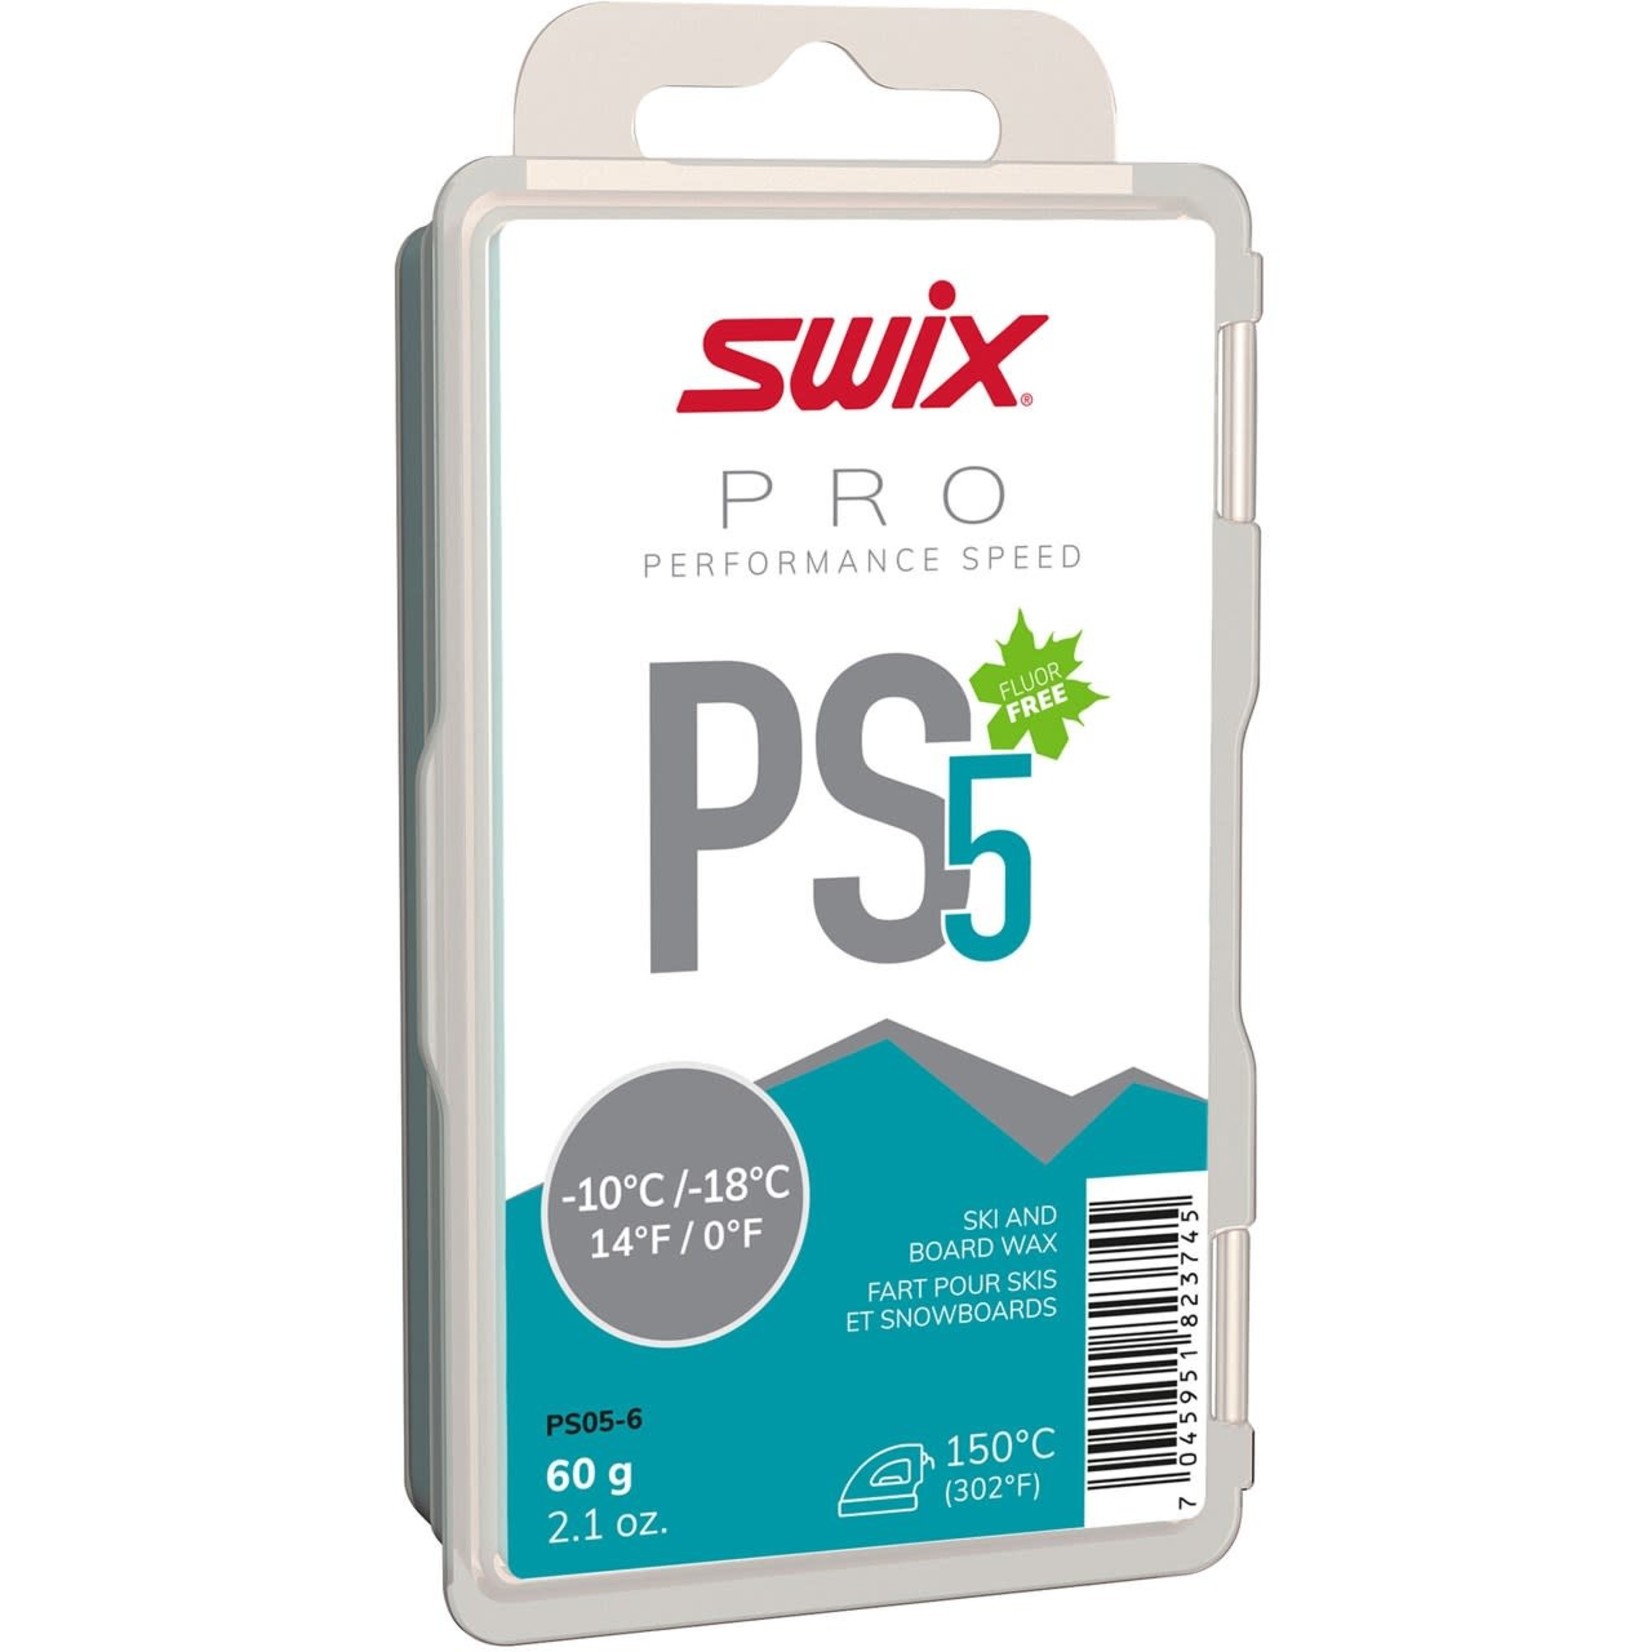 Swix Pro PS